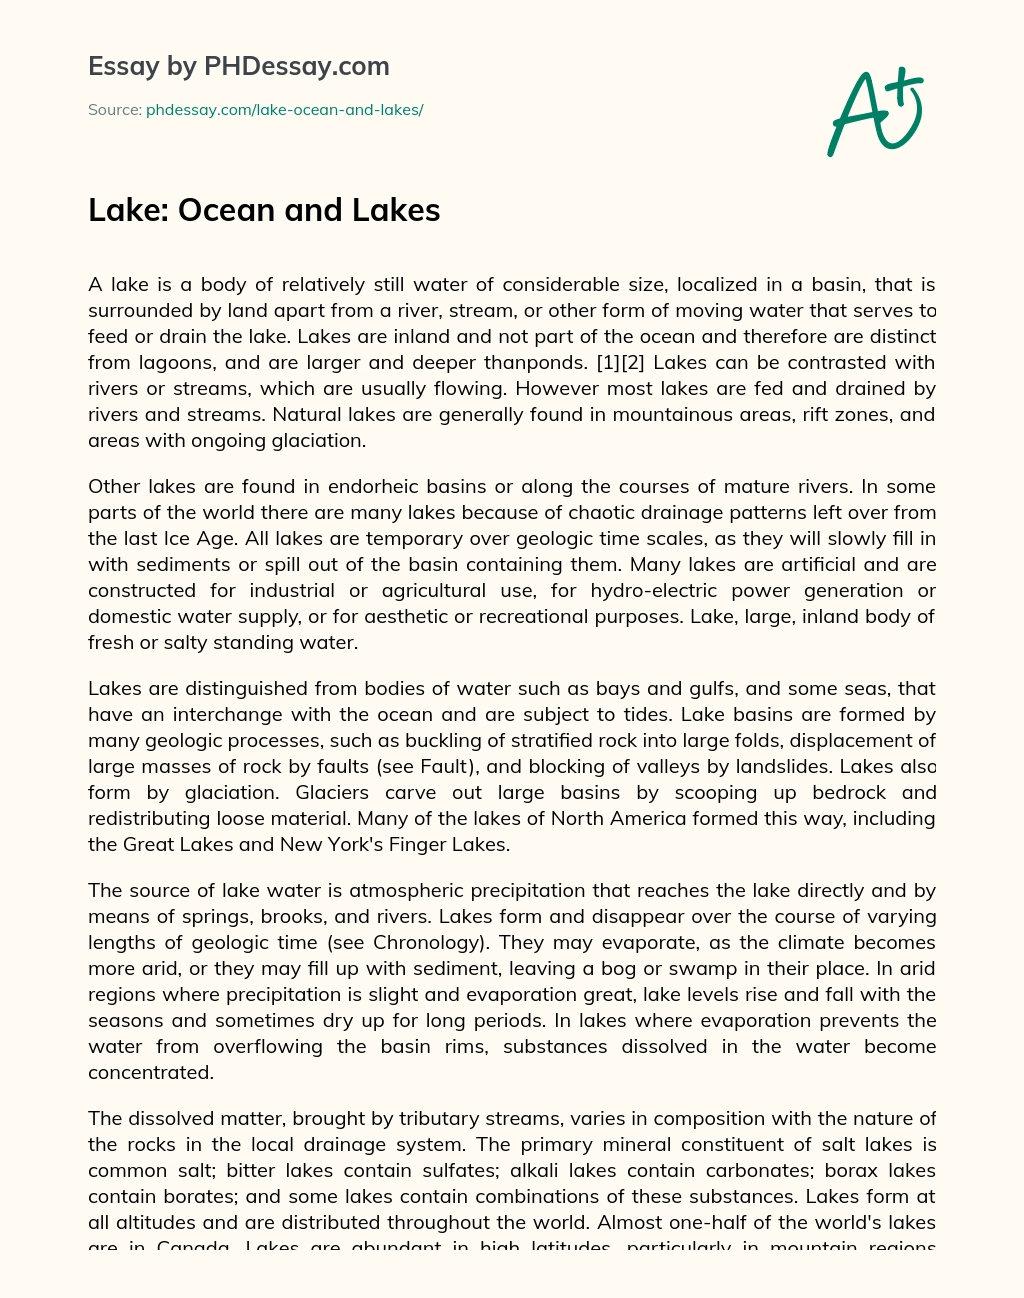 Lake: Ocean and Lakes essay